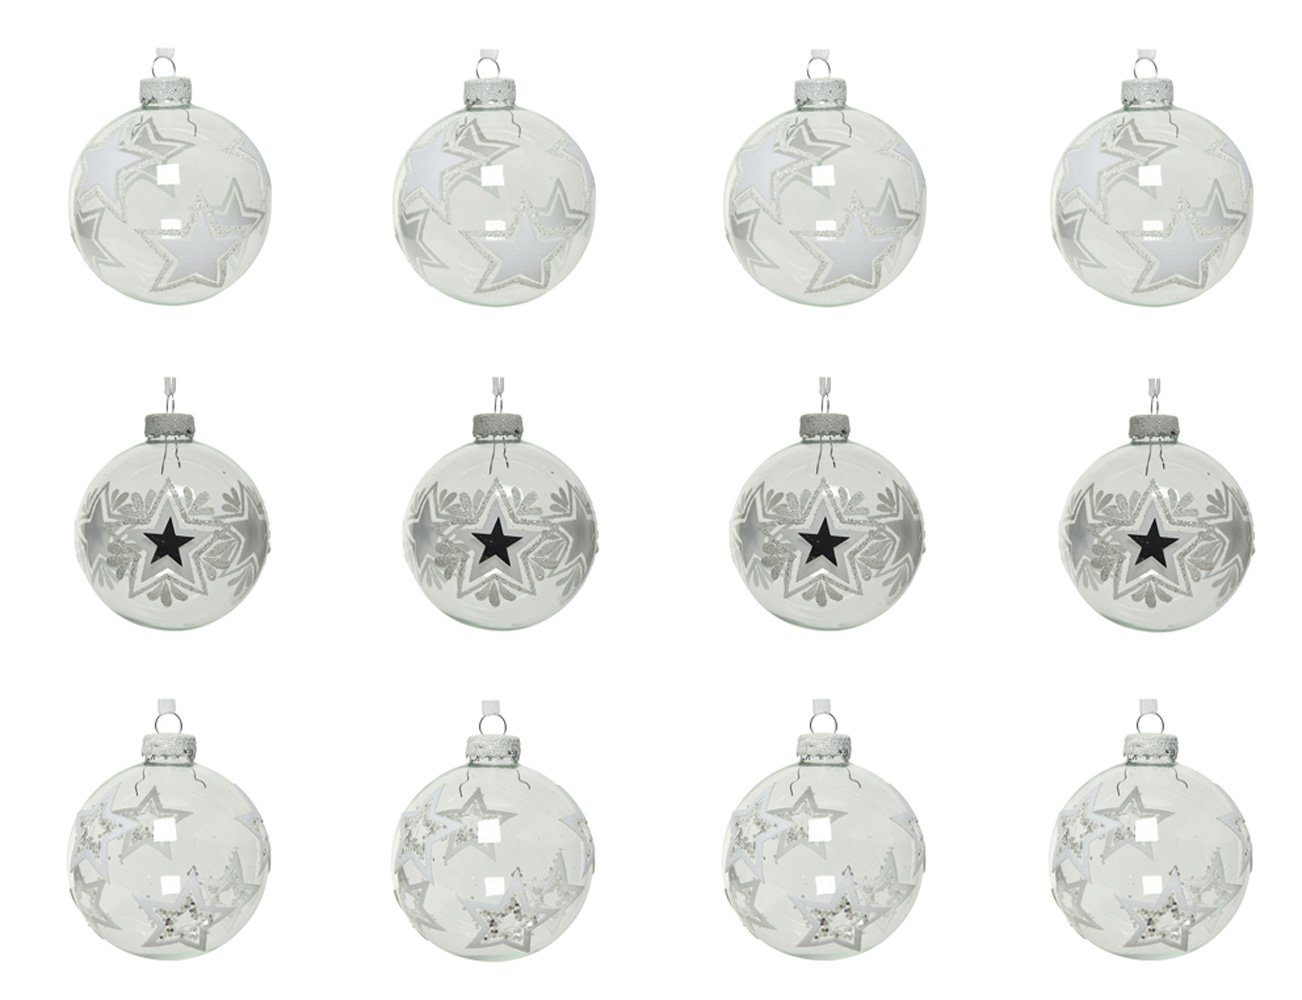 Decoris season decorations Weihnachtsbaumkugel, Weihnachtskugeln Glas Sterne Motiv 8cm klar transparent, 12er Set